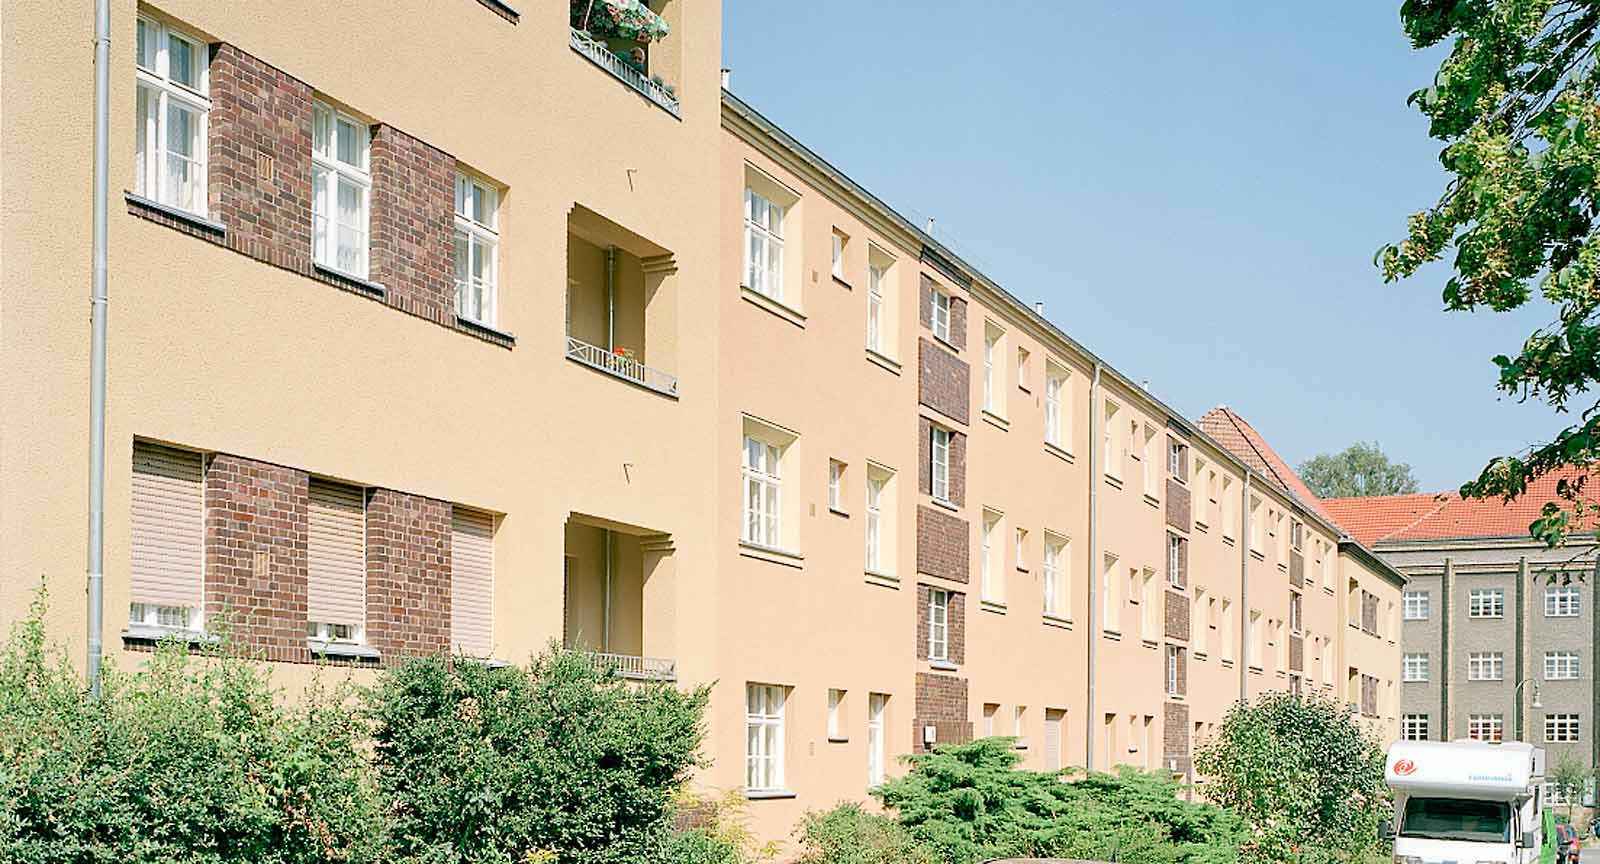 Wohnkomplex, Berlin-Schmargendorf